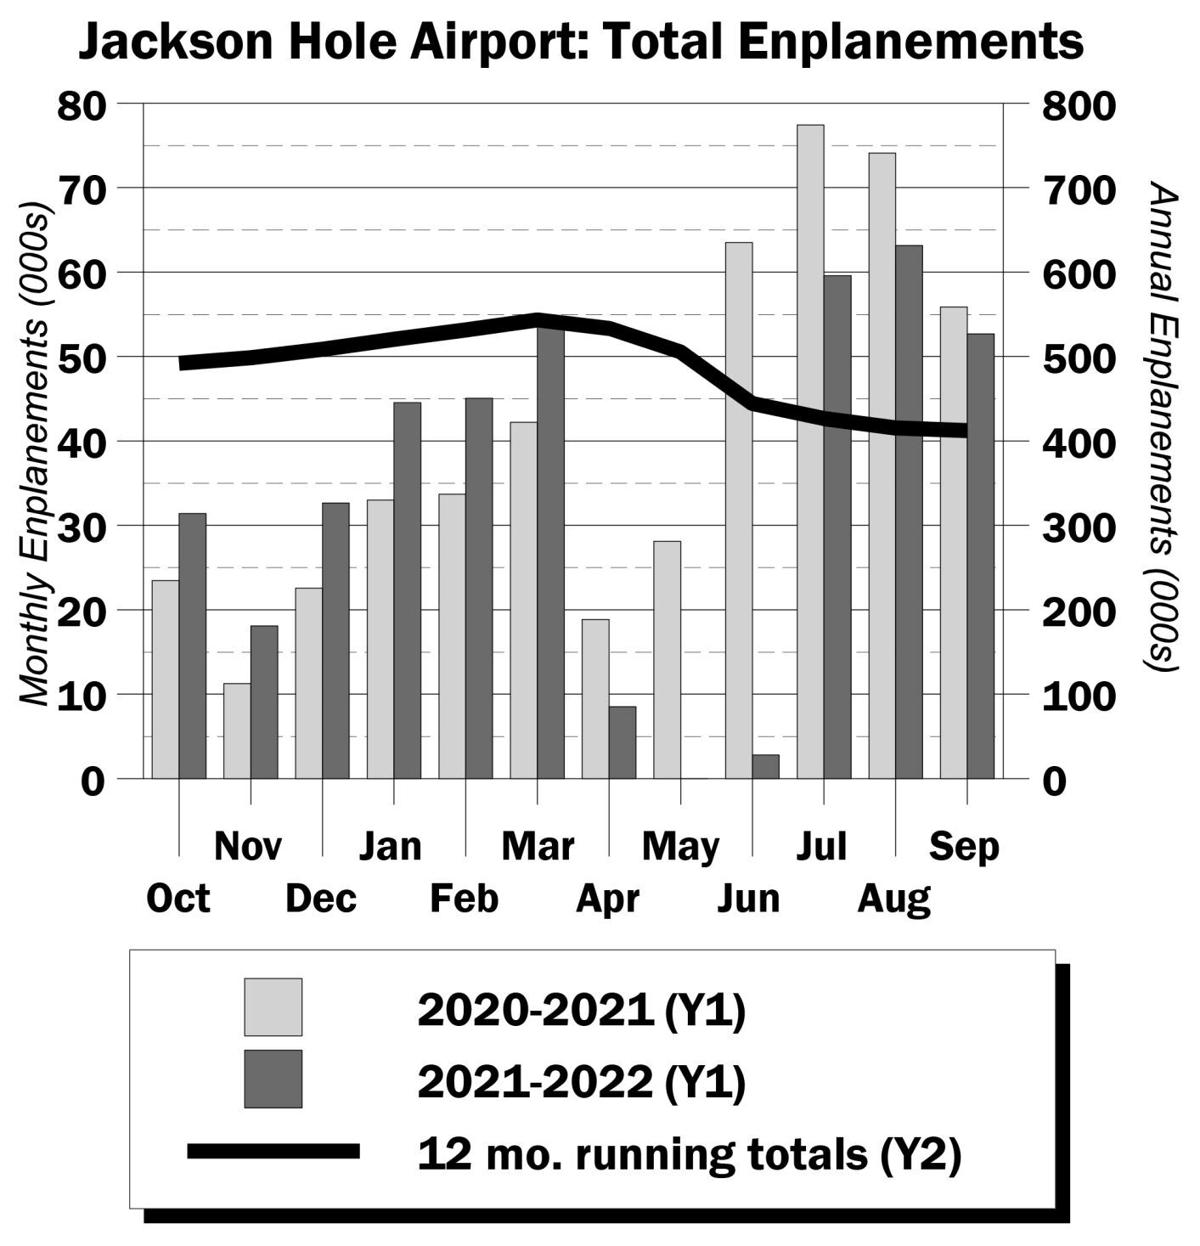 Jackson Hole Airport: Total Enplanements